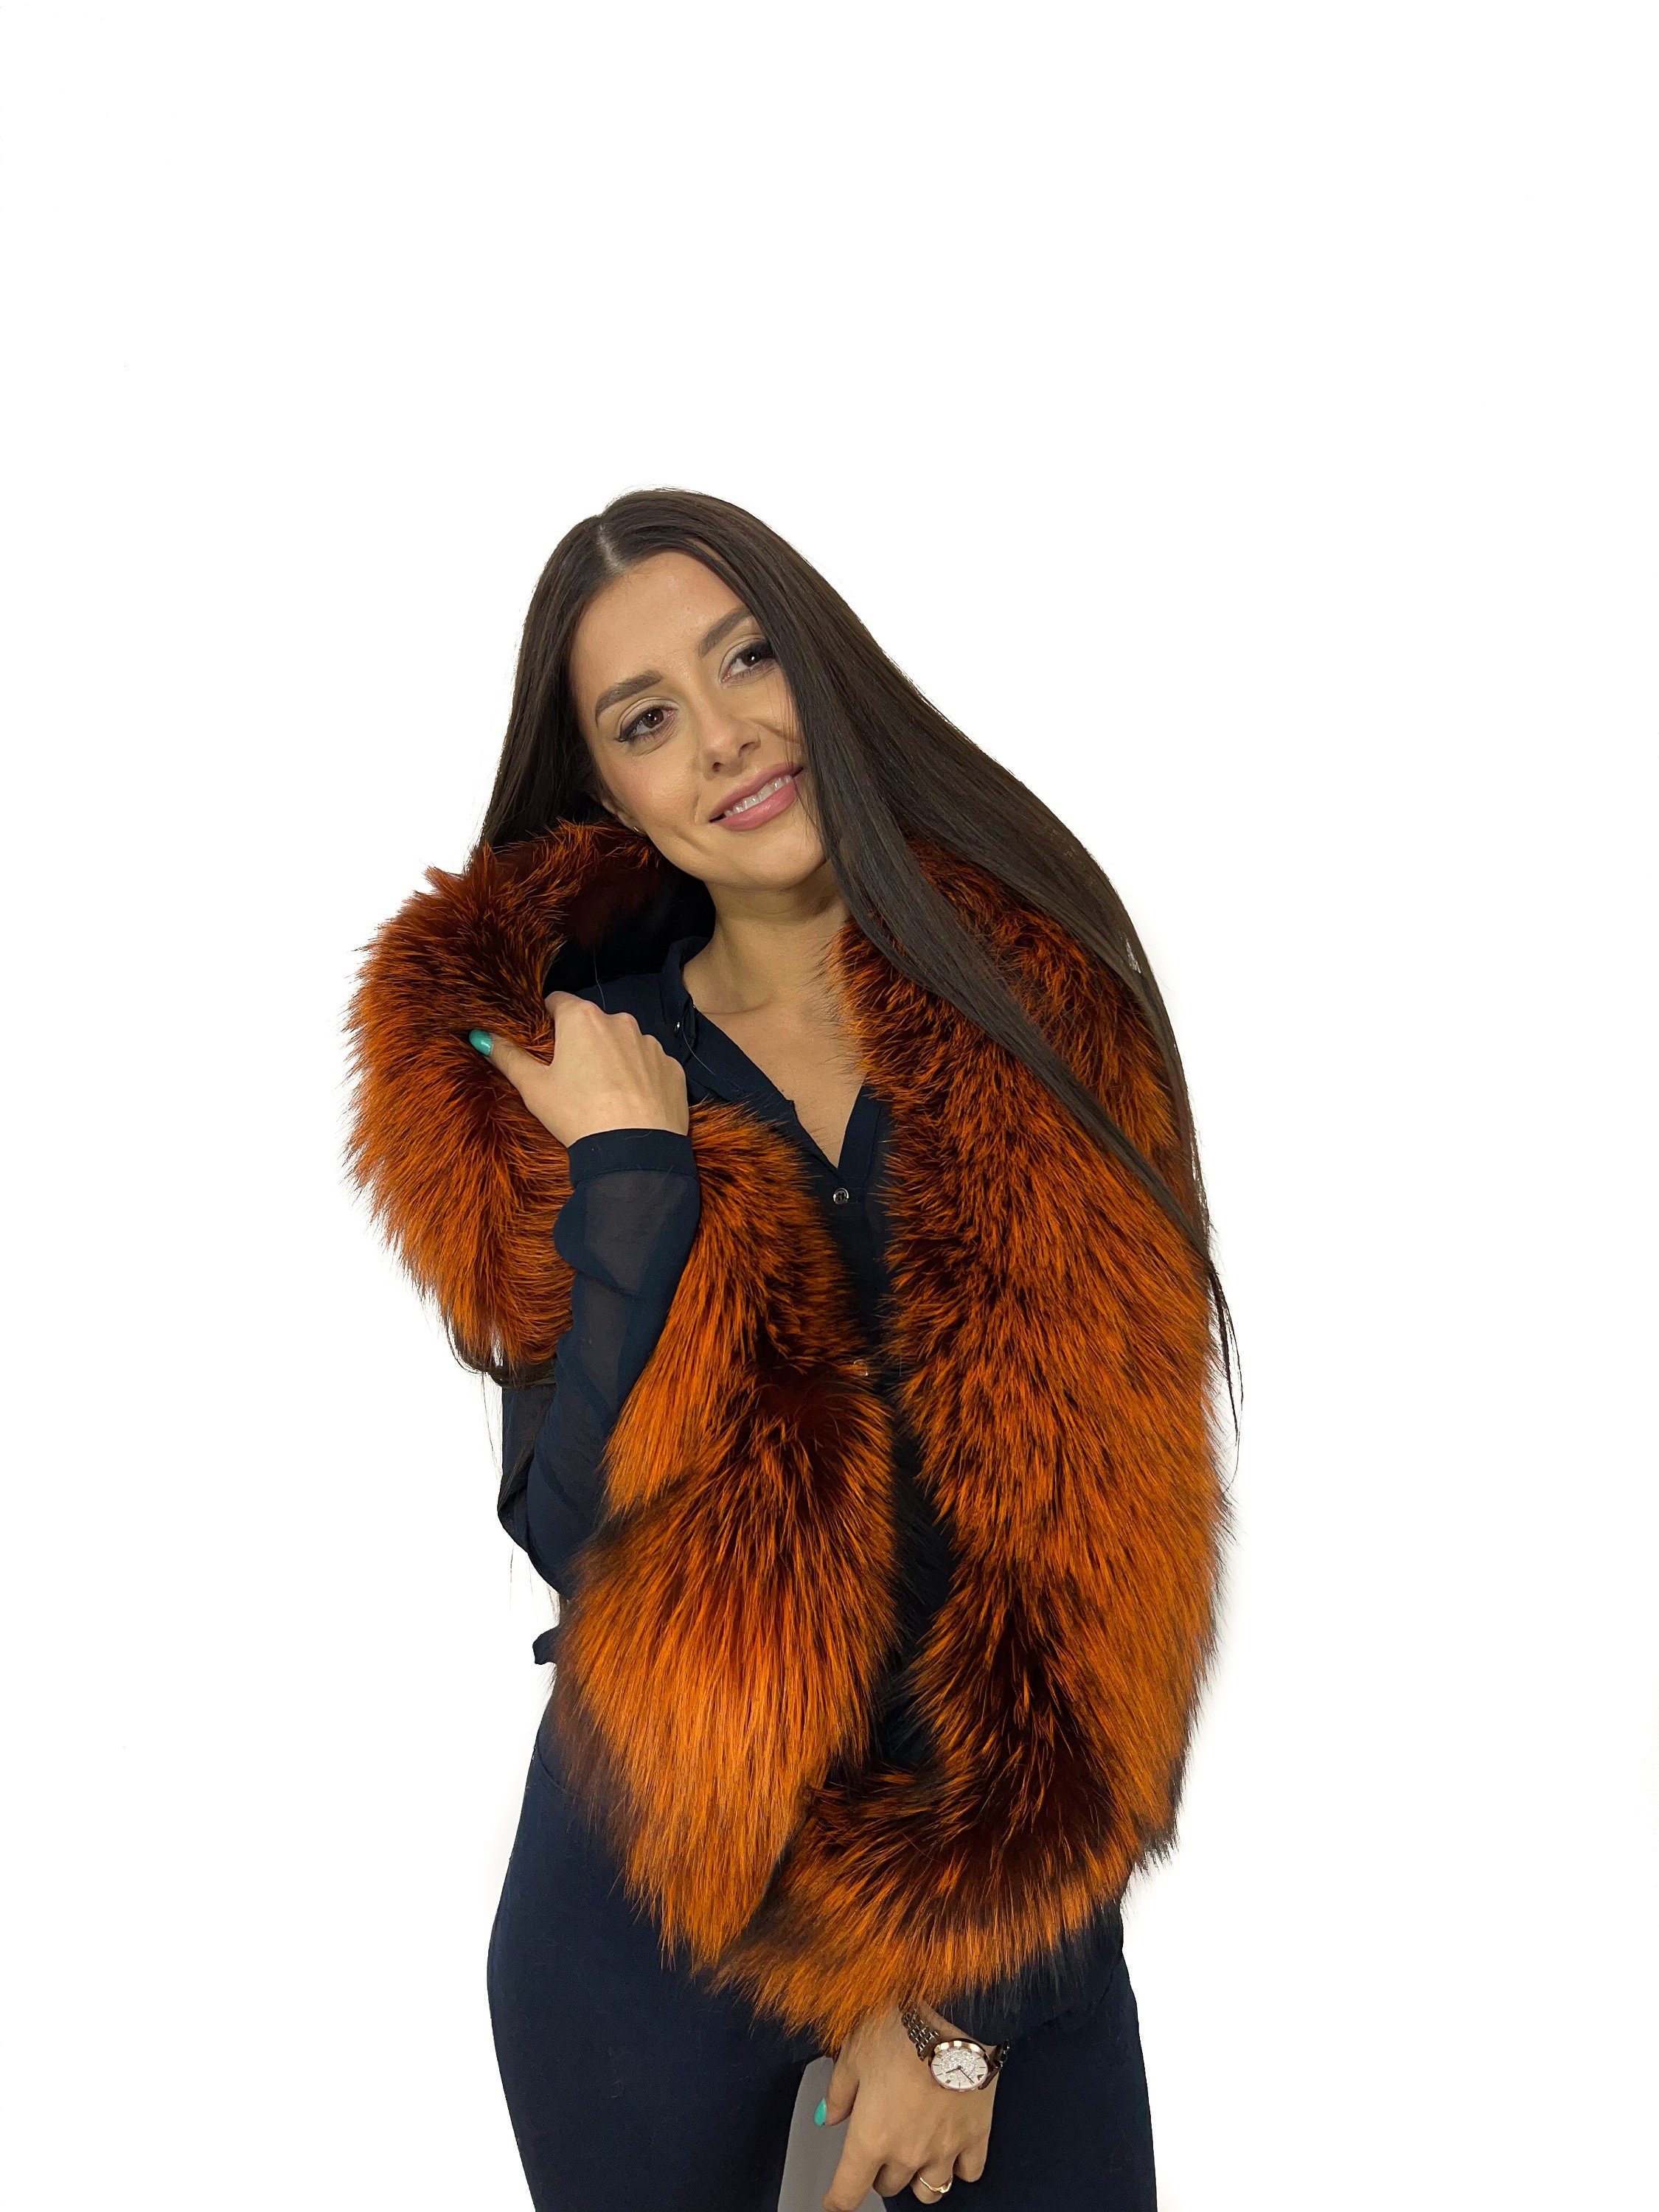 Finland Fox Fur Shawl 47 Inch. (120cm) Black Fox Fur Boa Stole Collar 